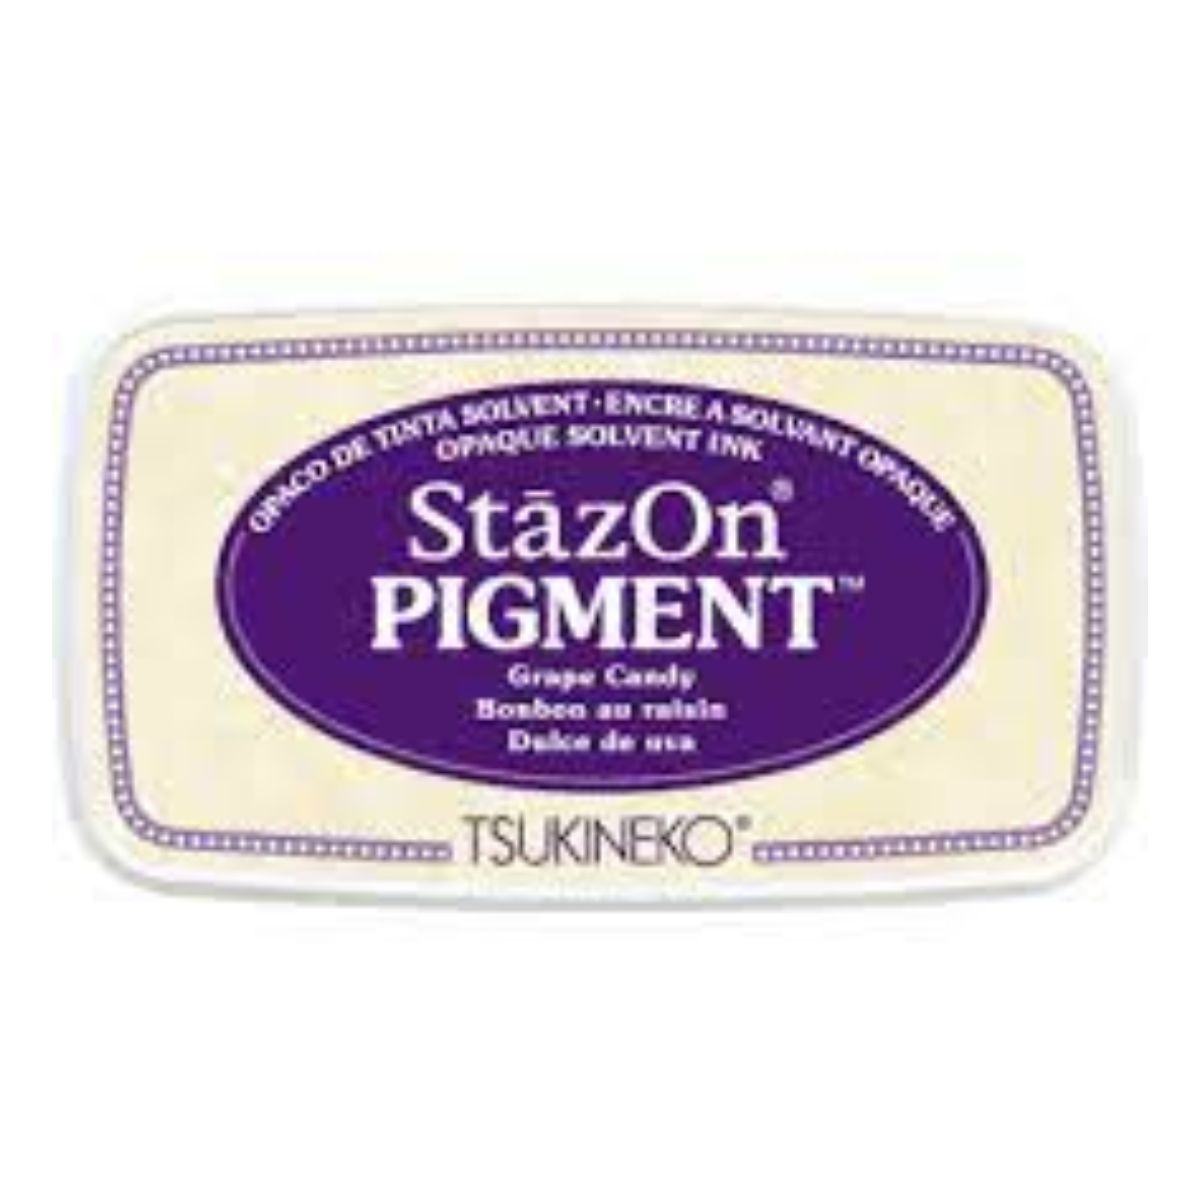 StazOn Pigment Ink - Grape Candy - Nur noch solange der Vorrat reicht